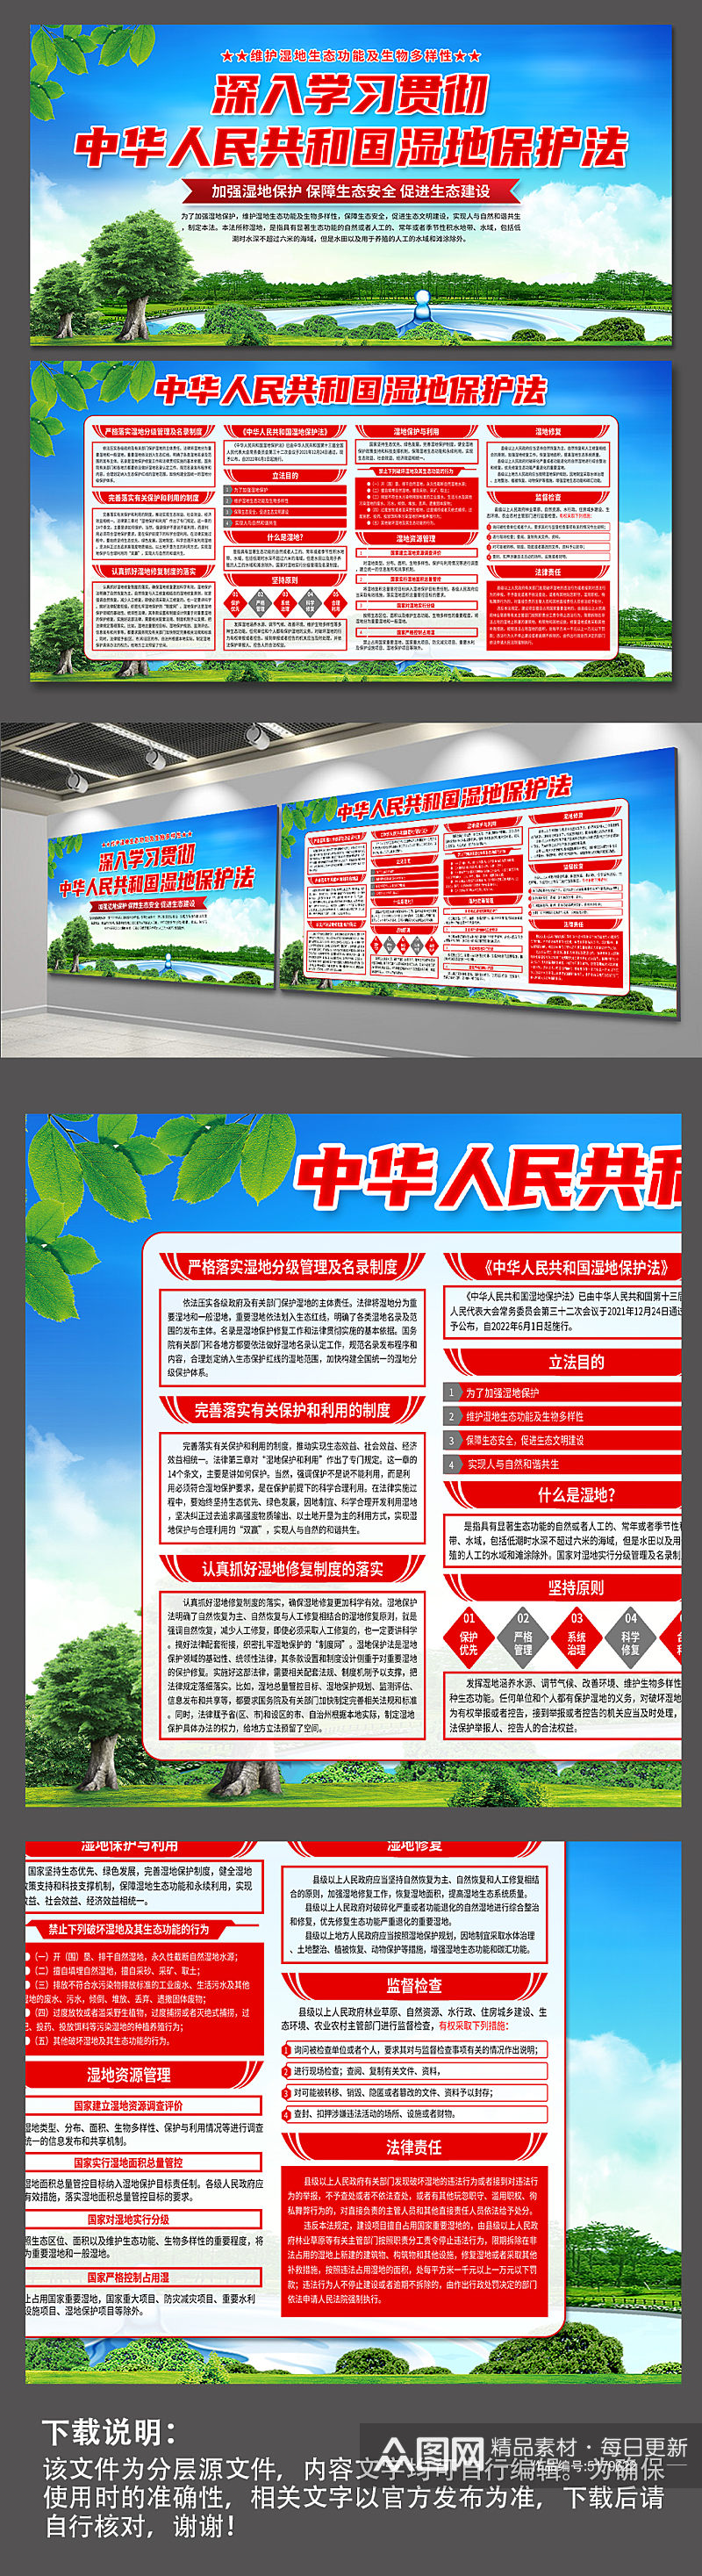 中华人民共和国湿地保护法展板素材